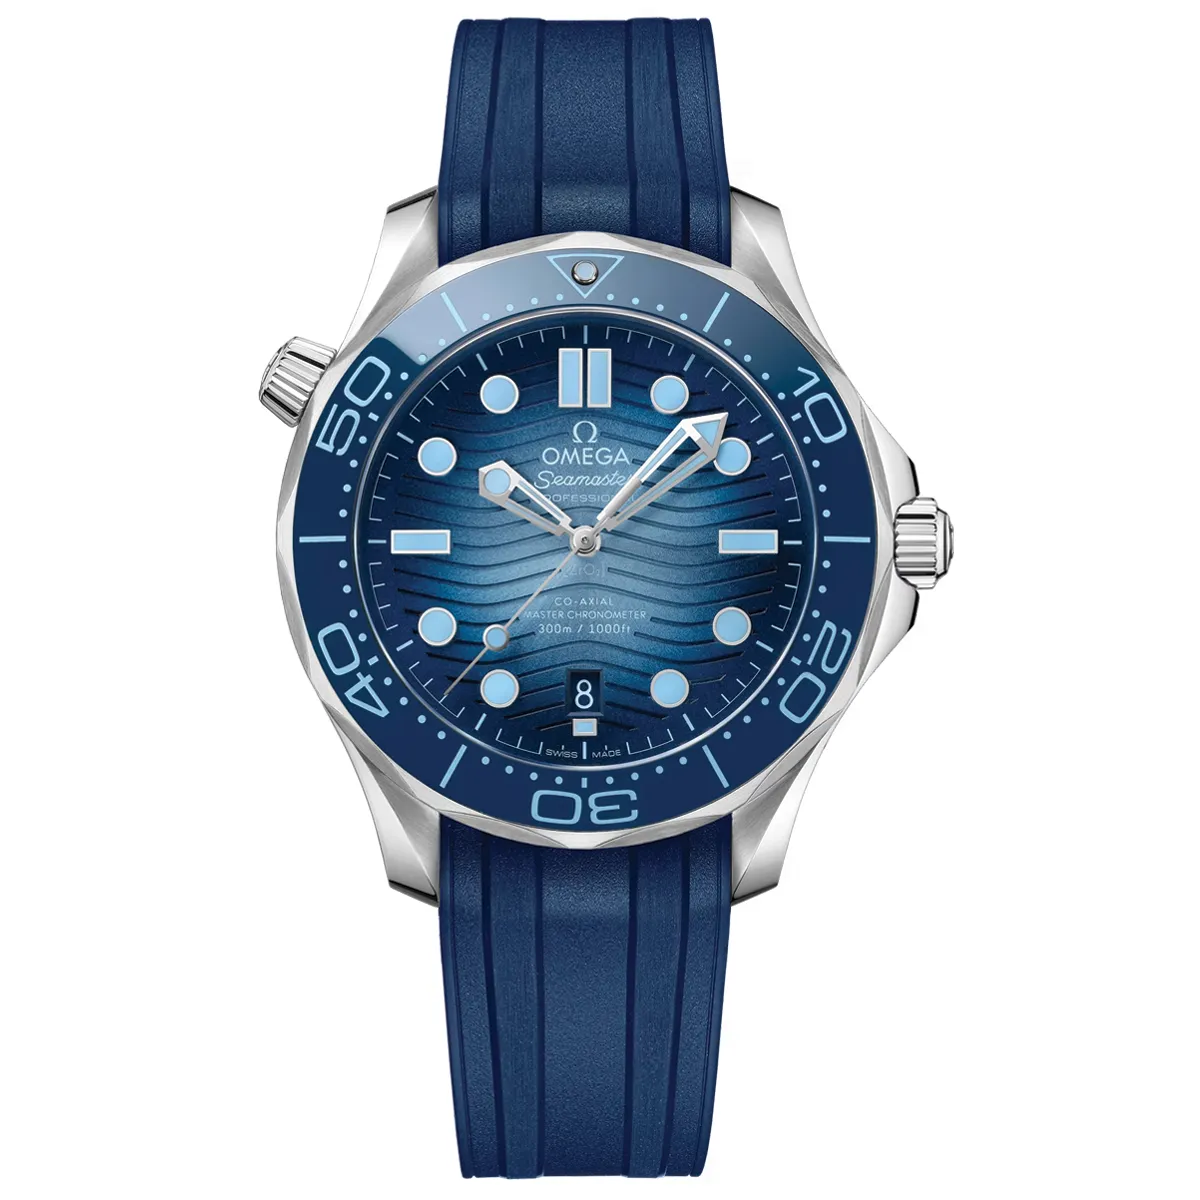 Đồng Hồ Omega Seamaster Diver Master Chronometer 210.32.42.20.03.002 mặt số màu xanh. Dây đeo bằng cao su. Thân vỏ bằng thép.